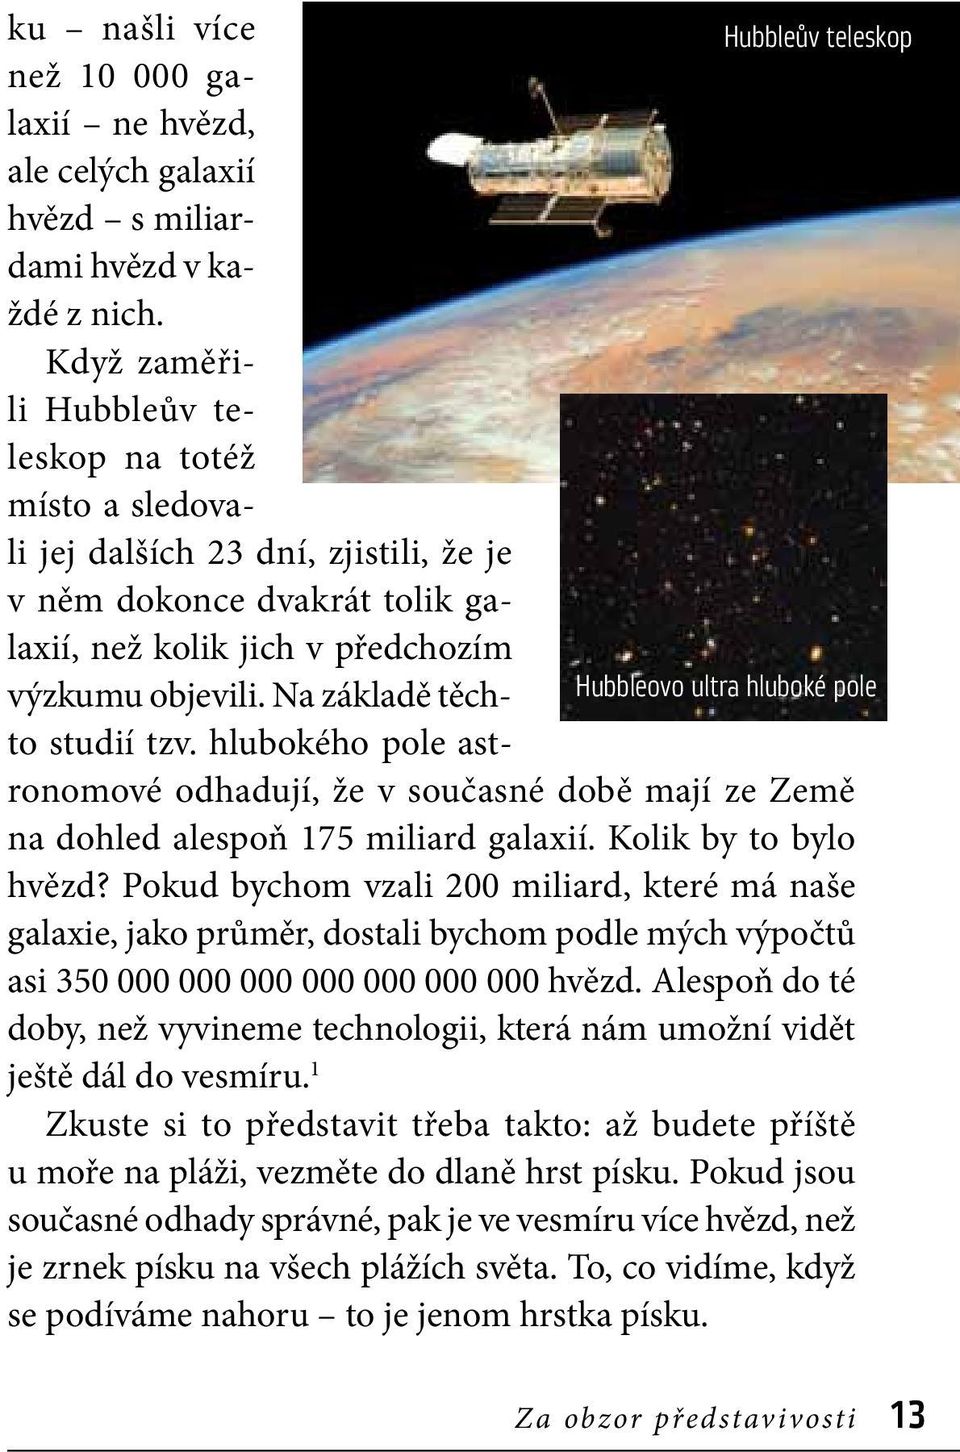 Na základě těchto studií tzv. hlubokého pole ast- Hubbleovo ultra hluboké pole ronomové odhadují, že v současné době mají ze Země na dohled alespoň 175 miliard galaxií. Kolik by to bylo hvězd?